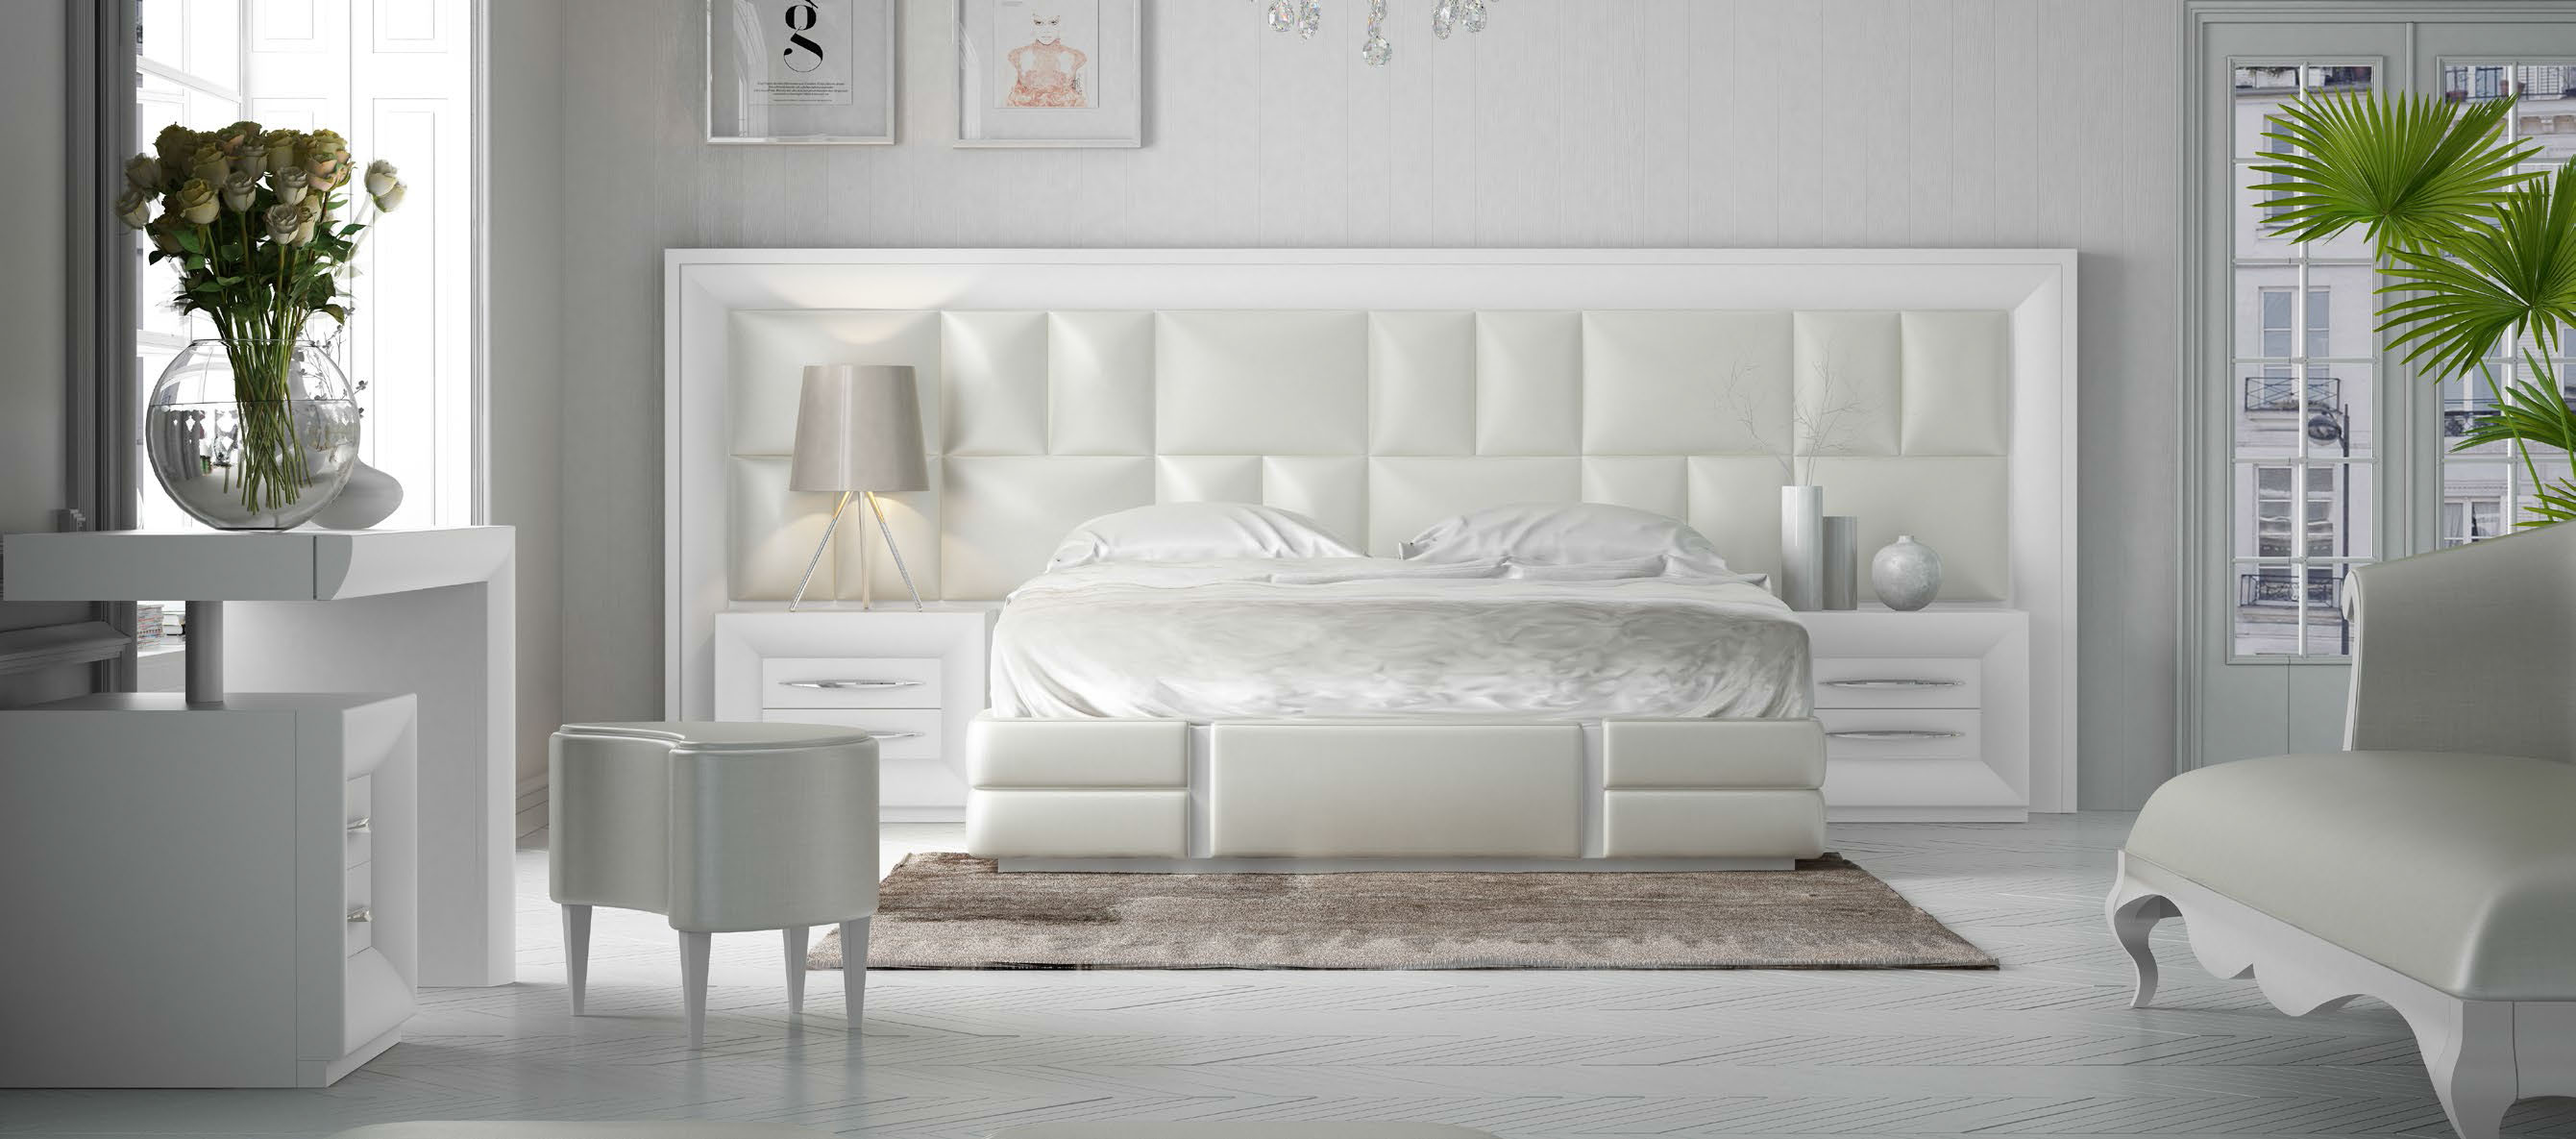 Brands Franco Furniture Avanty Bedrooms, Spain DOR 114